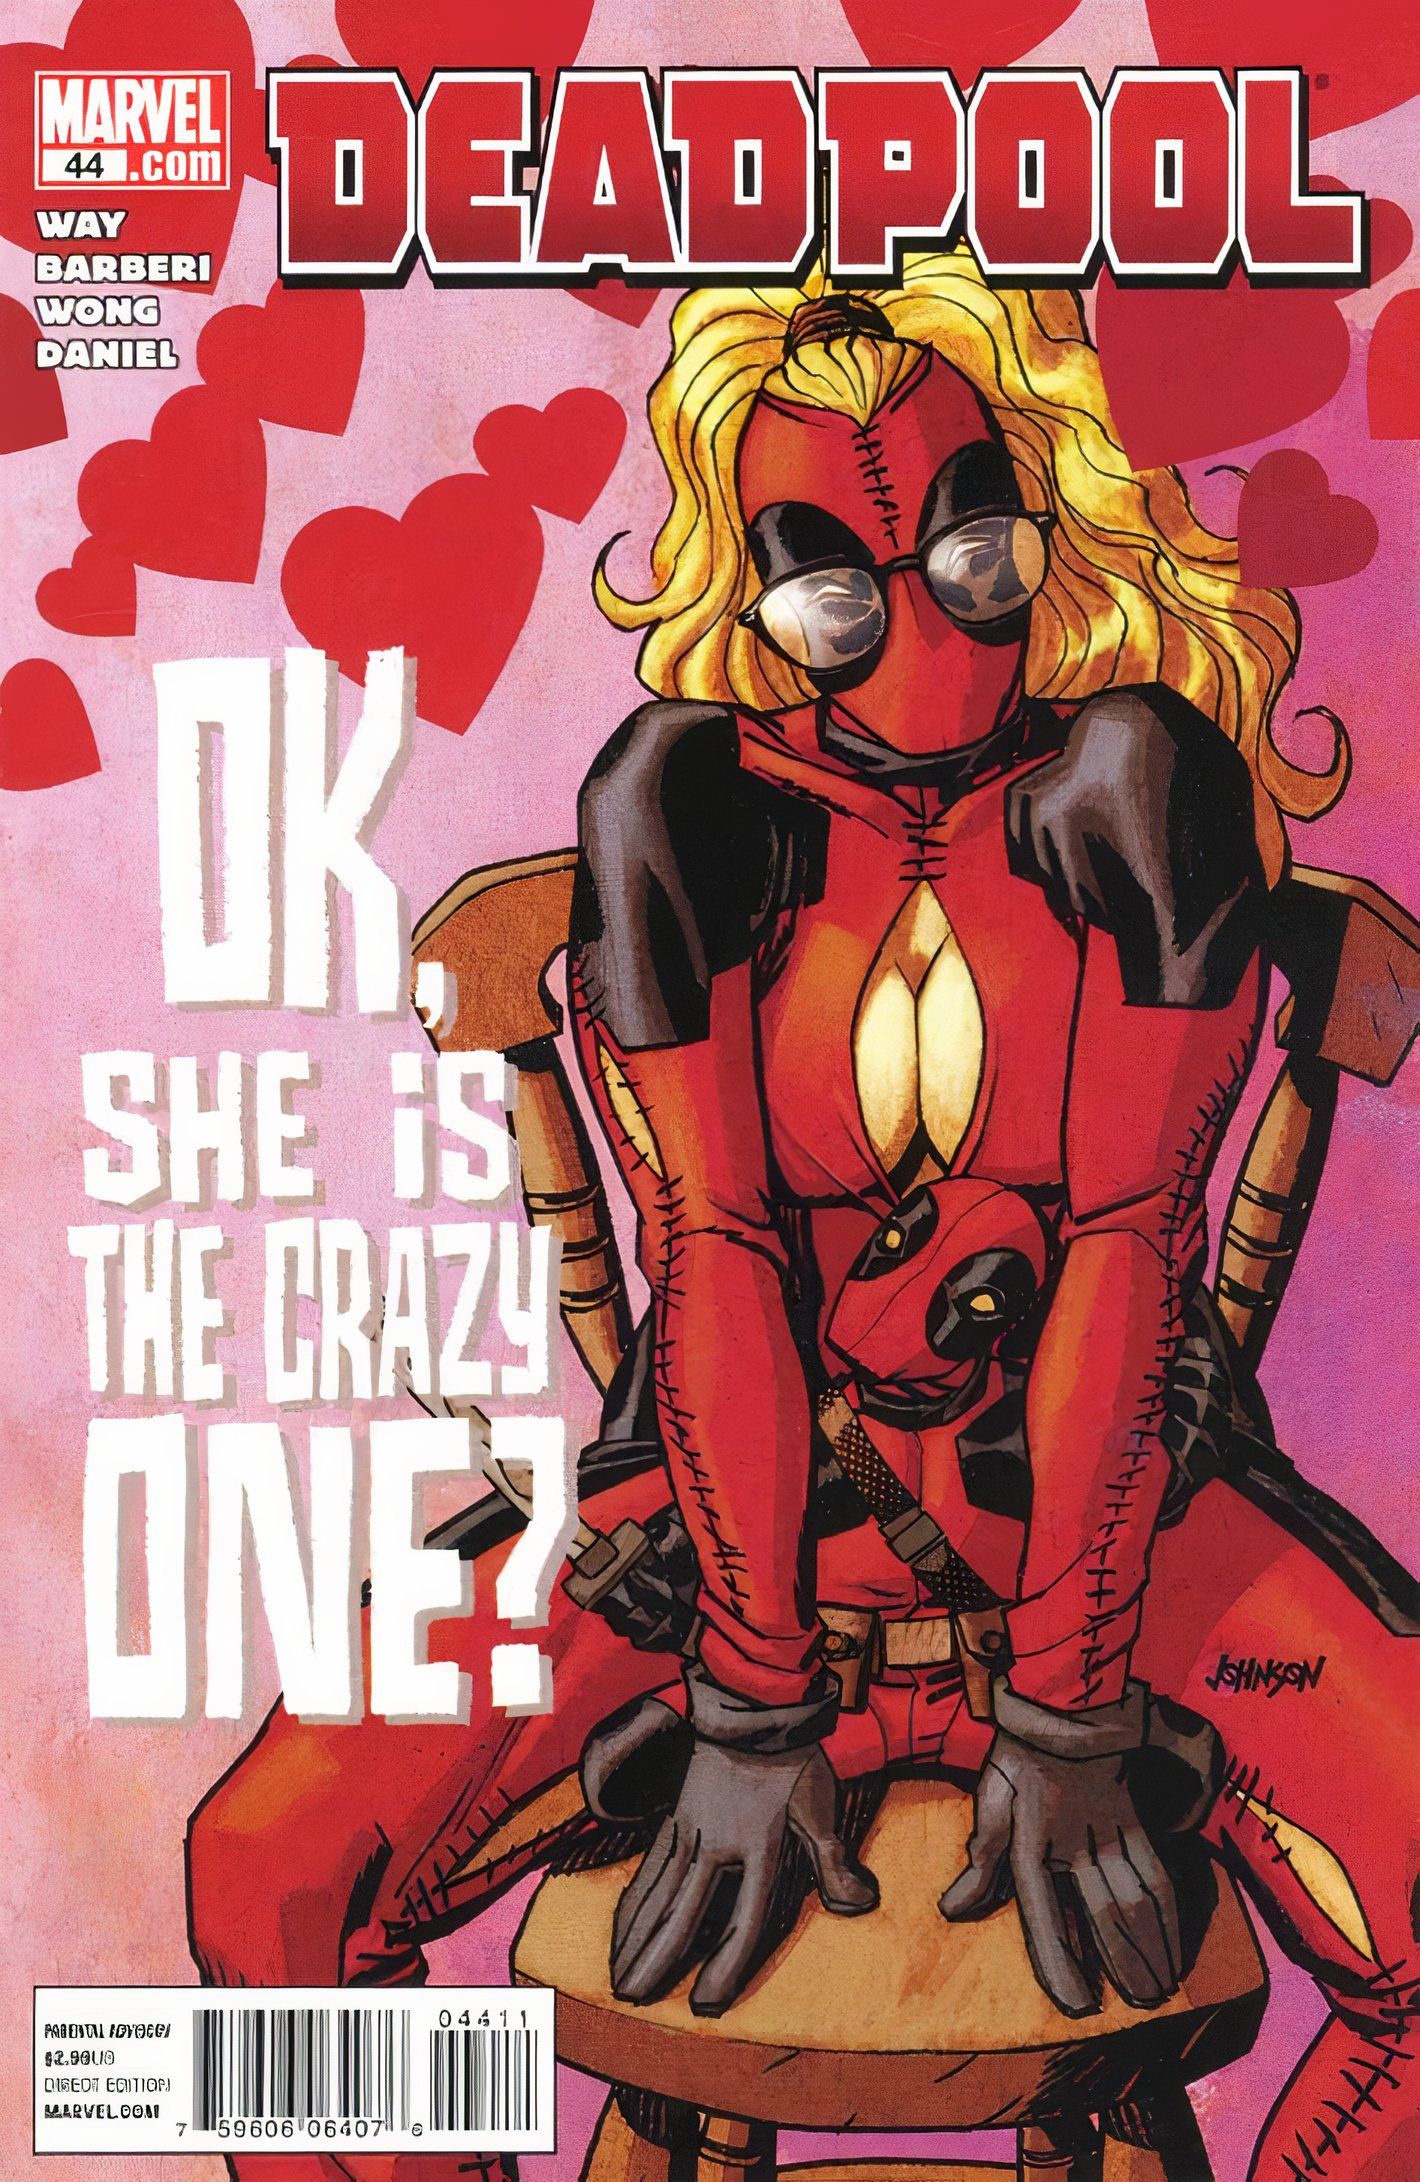 Capa da revista Deadpool #44, com a Dra. Ella Whitbey em sua réplica do traje de Deadpool